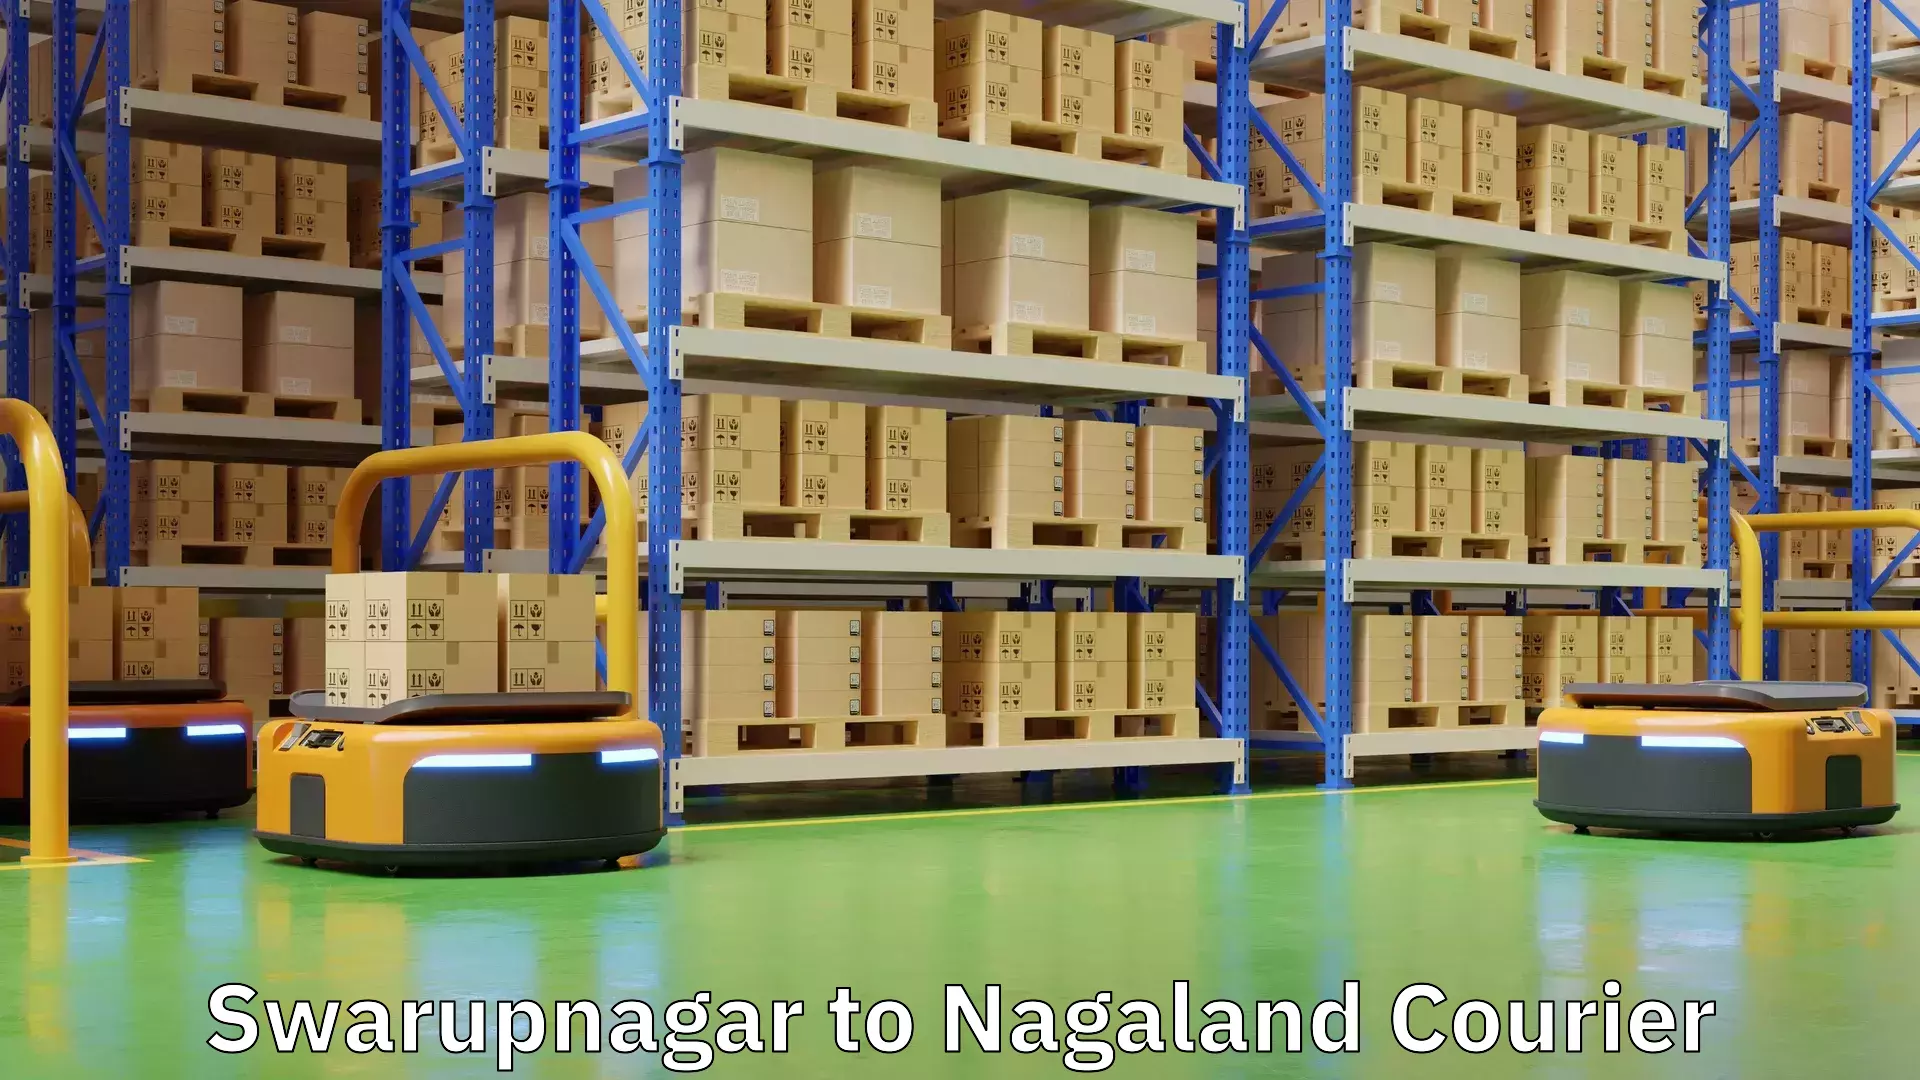 Shipping and handling Swarupnagar to Nagaland